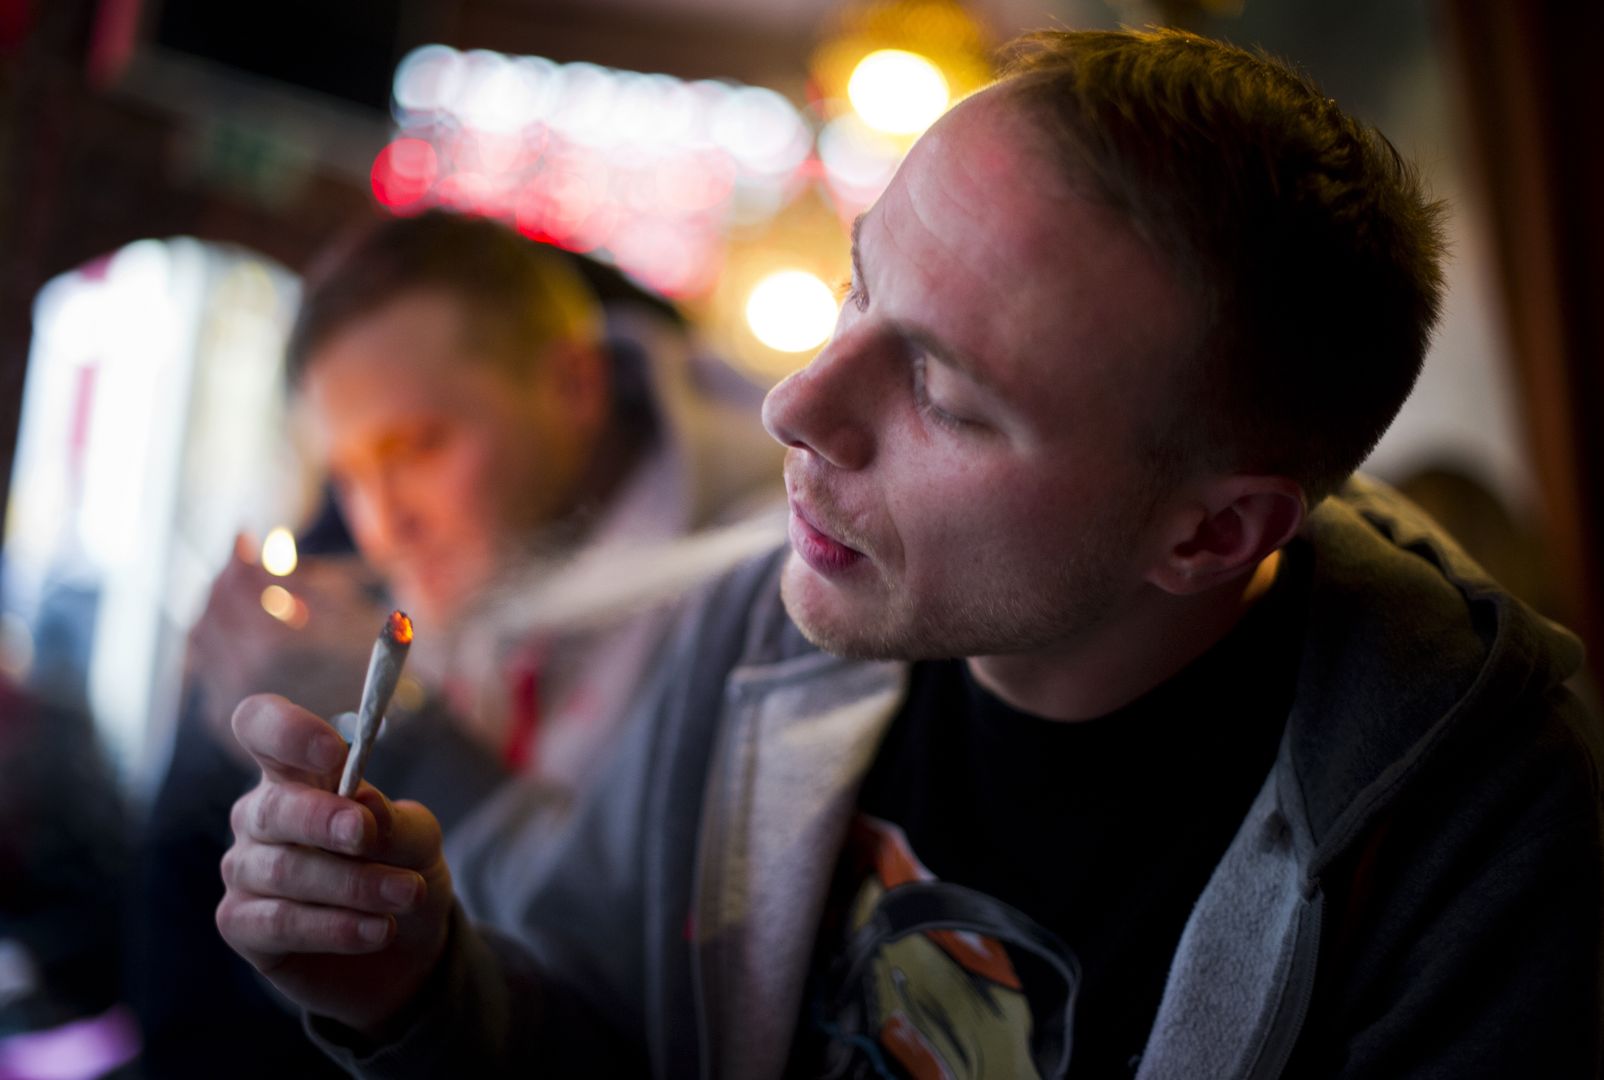 Holandia. Amsterdam mocno się zmieni. "Nie" dla pijaków i palaczy marihuany